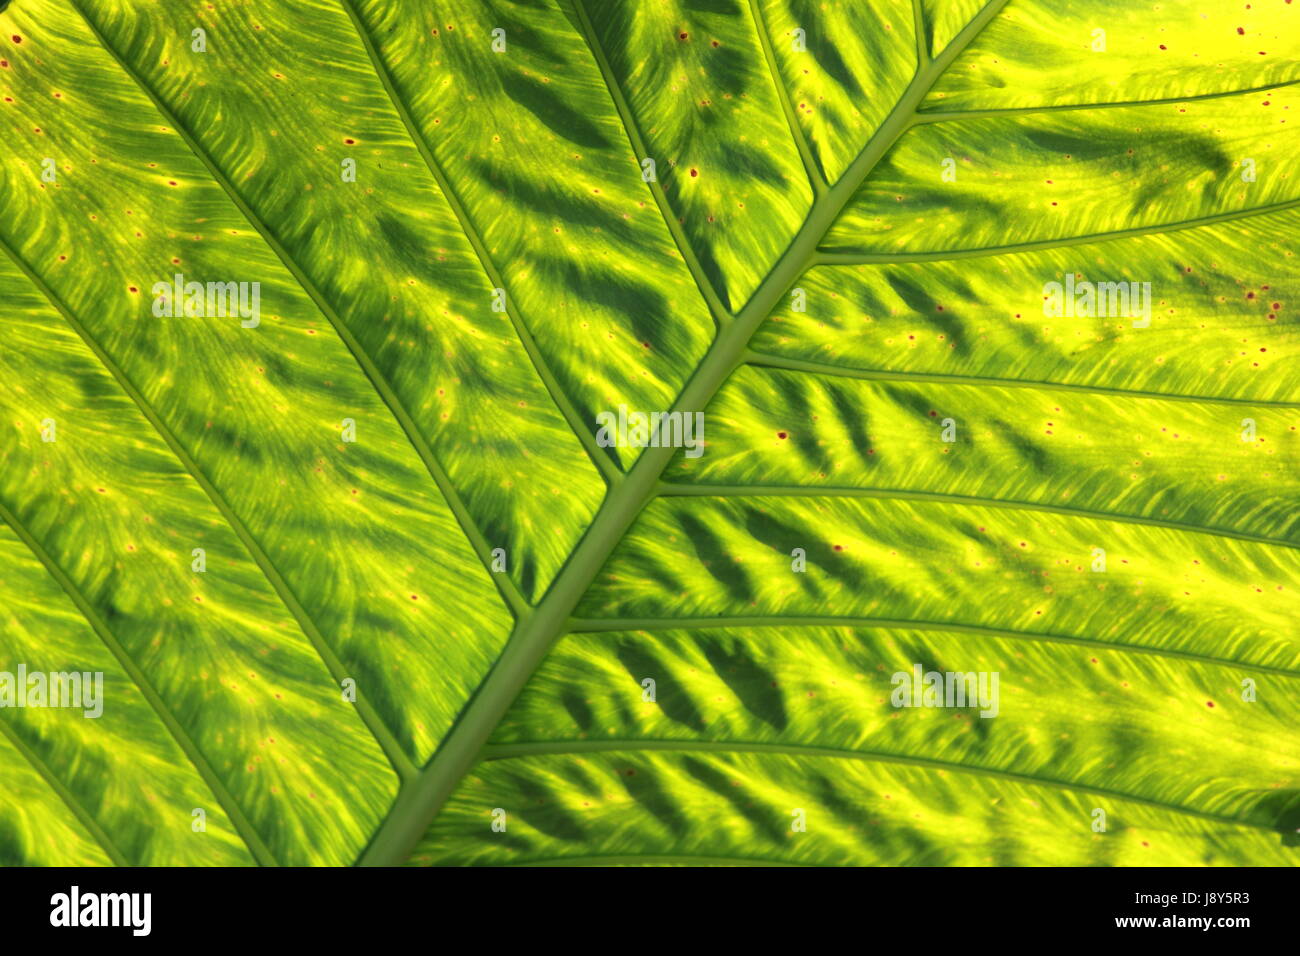 leaf, closeup, details, wallpaper, palm, fibres, fibers, lawn, green, backdrop, Stock Photo